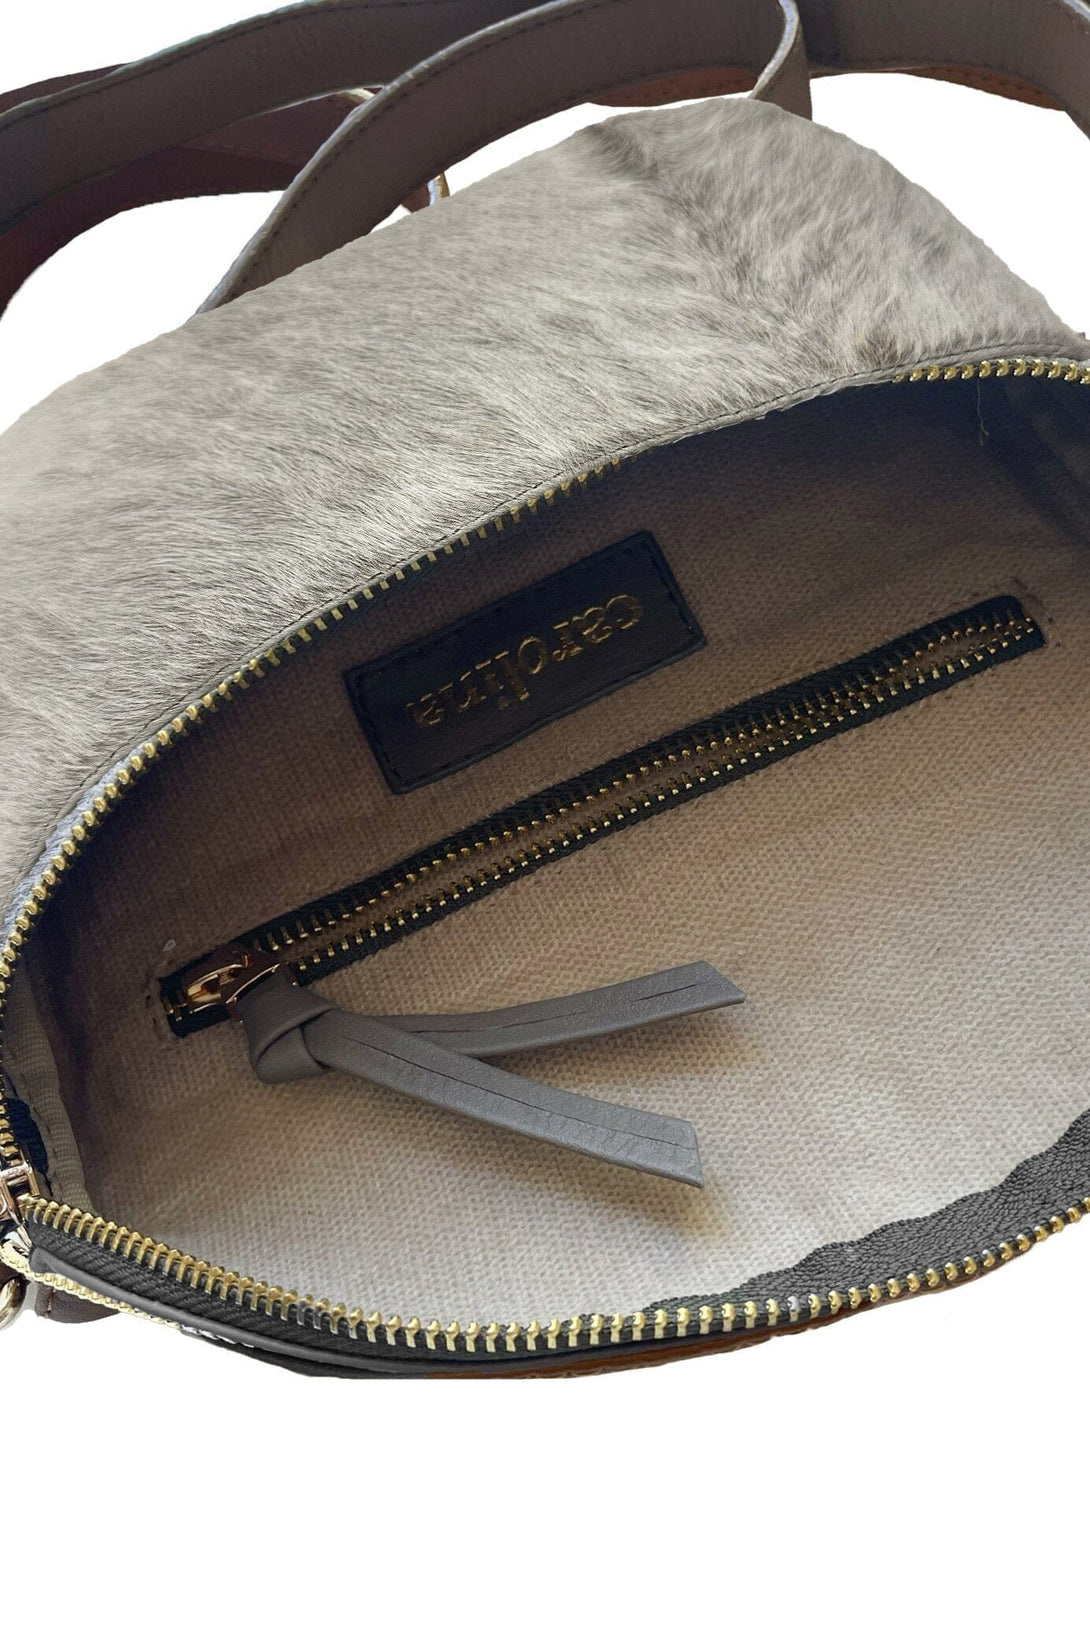 Ramona Small Leather Handbag Khaki Natural Leather